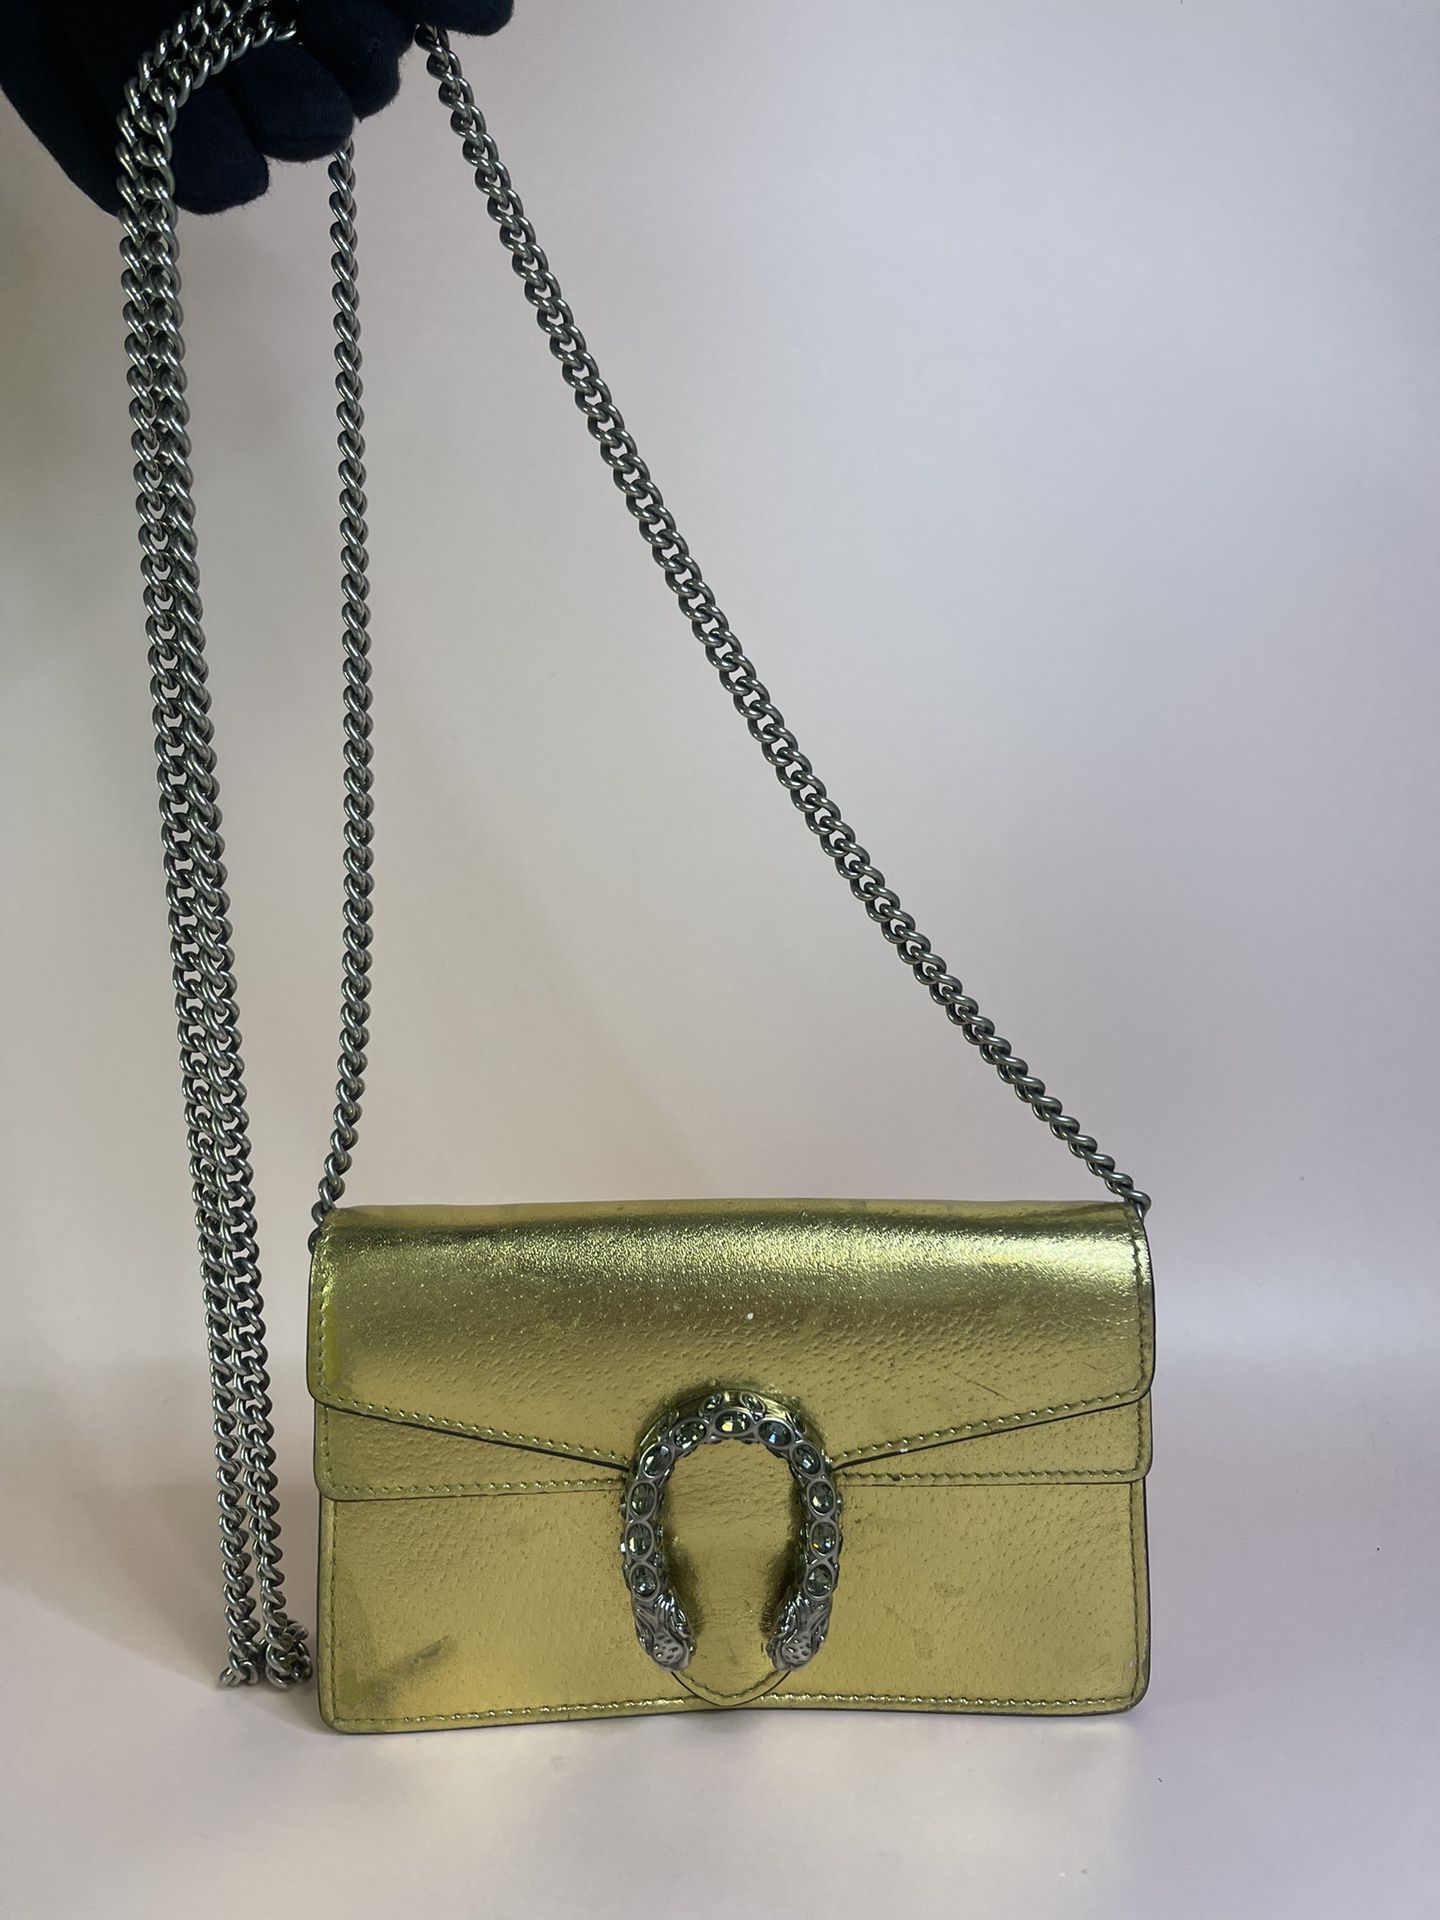 Gucci Dionysus Leather Super Mini Bag Jewelry & Accessories